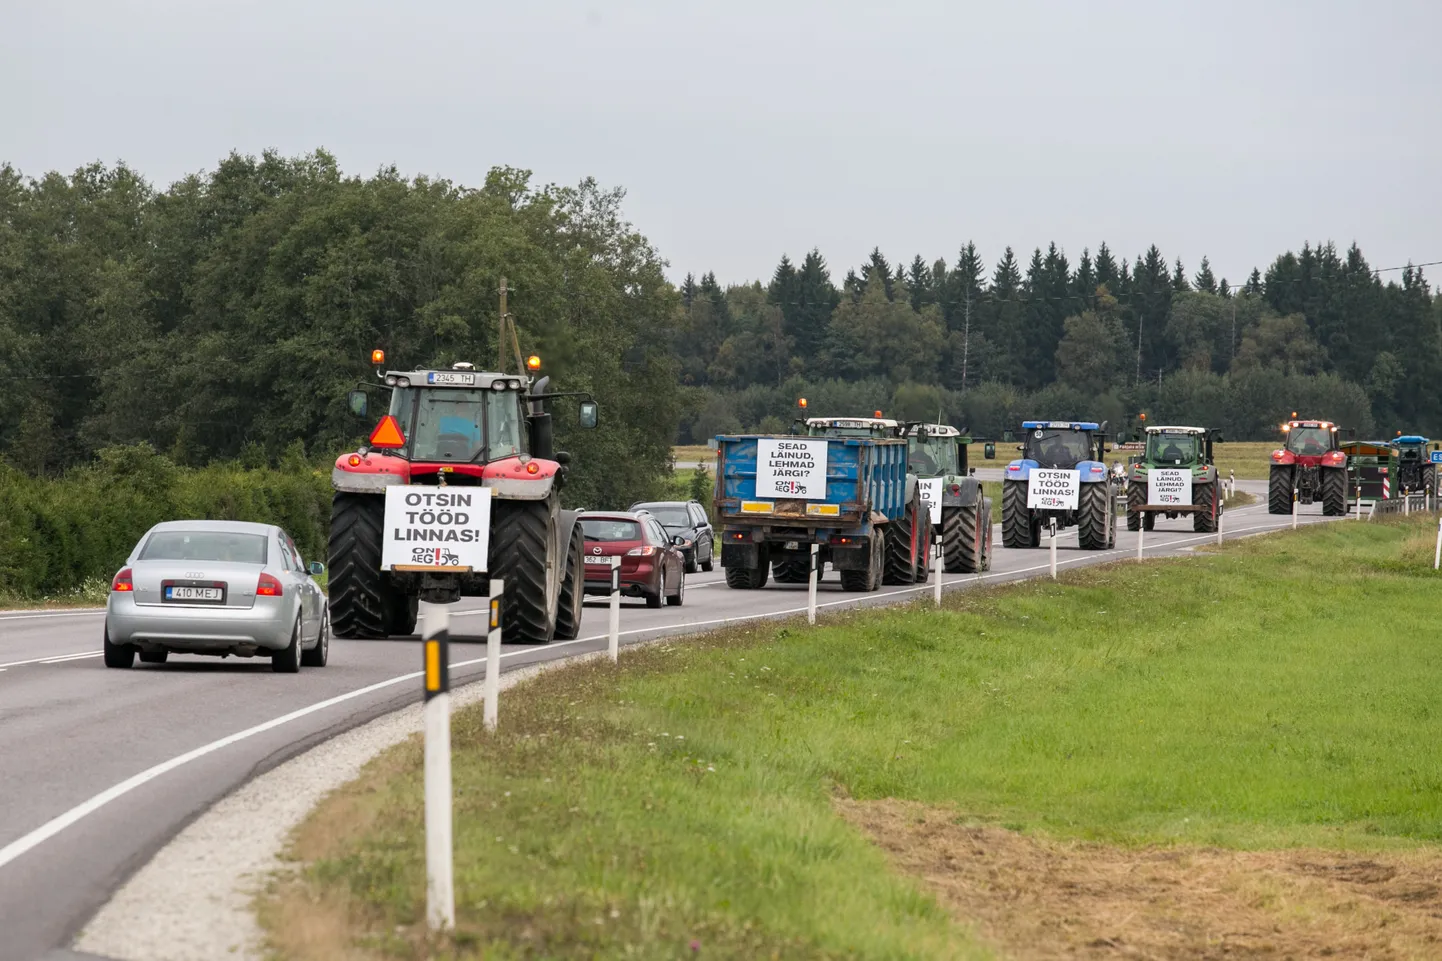 Põllumeeste protestikäik 2015. aastal. Toona sõitsid talunikud traktoritega Tallinnasse Toompeale avalikule koosolekule, et anda riigikogu liikmetele üle petitsioon ja teavitada avalikkust põllumajanduse mure­kohtadest.